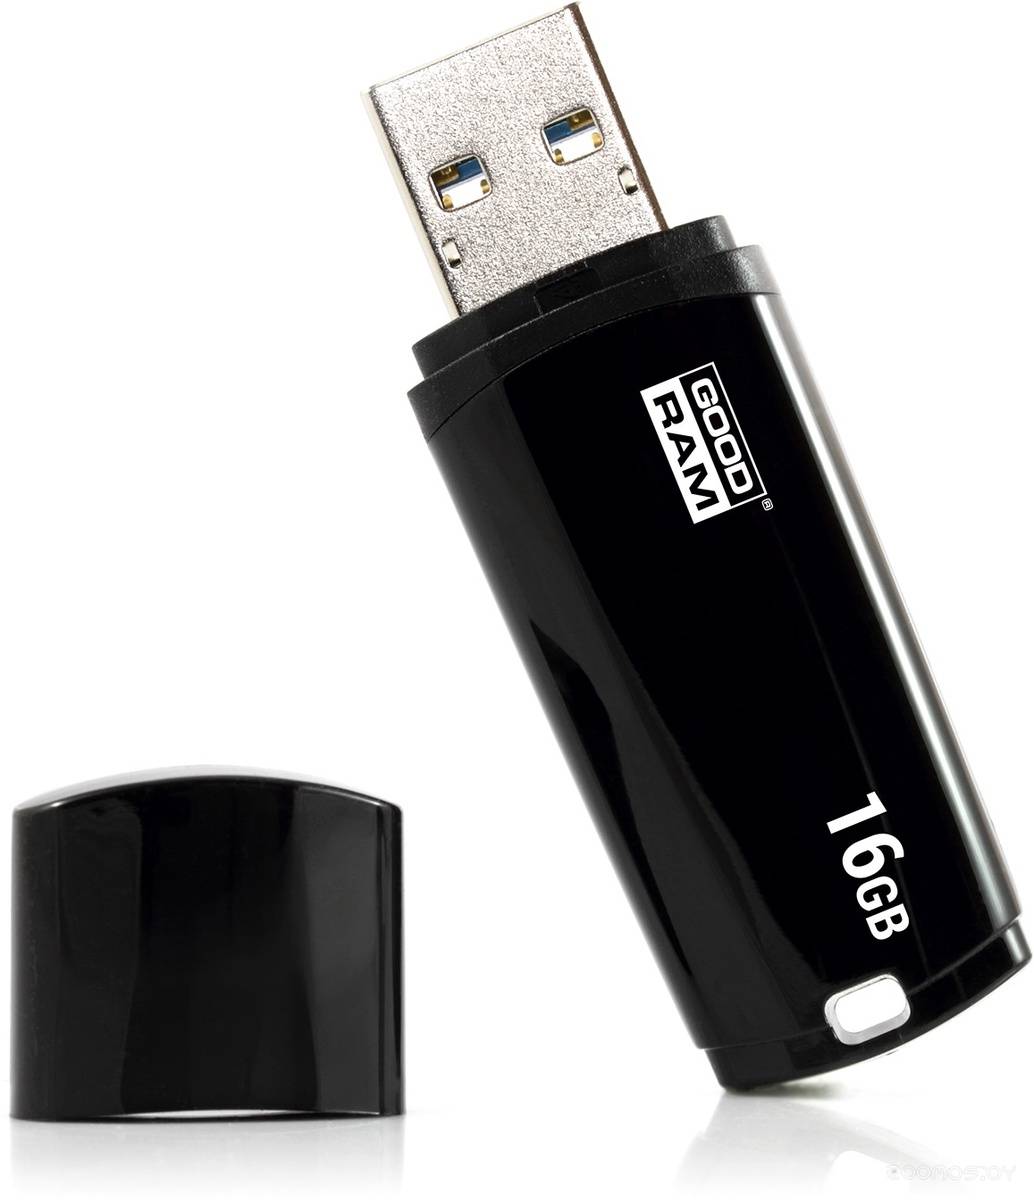 USB Flash GoodRAM UMM3 16Gb (Black)     